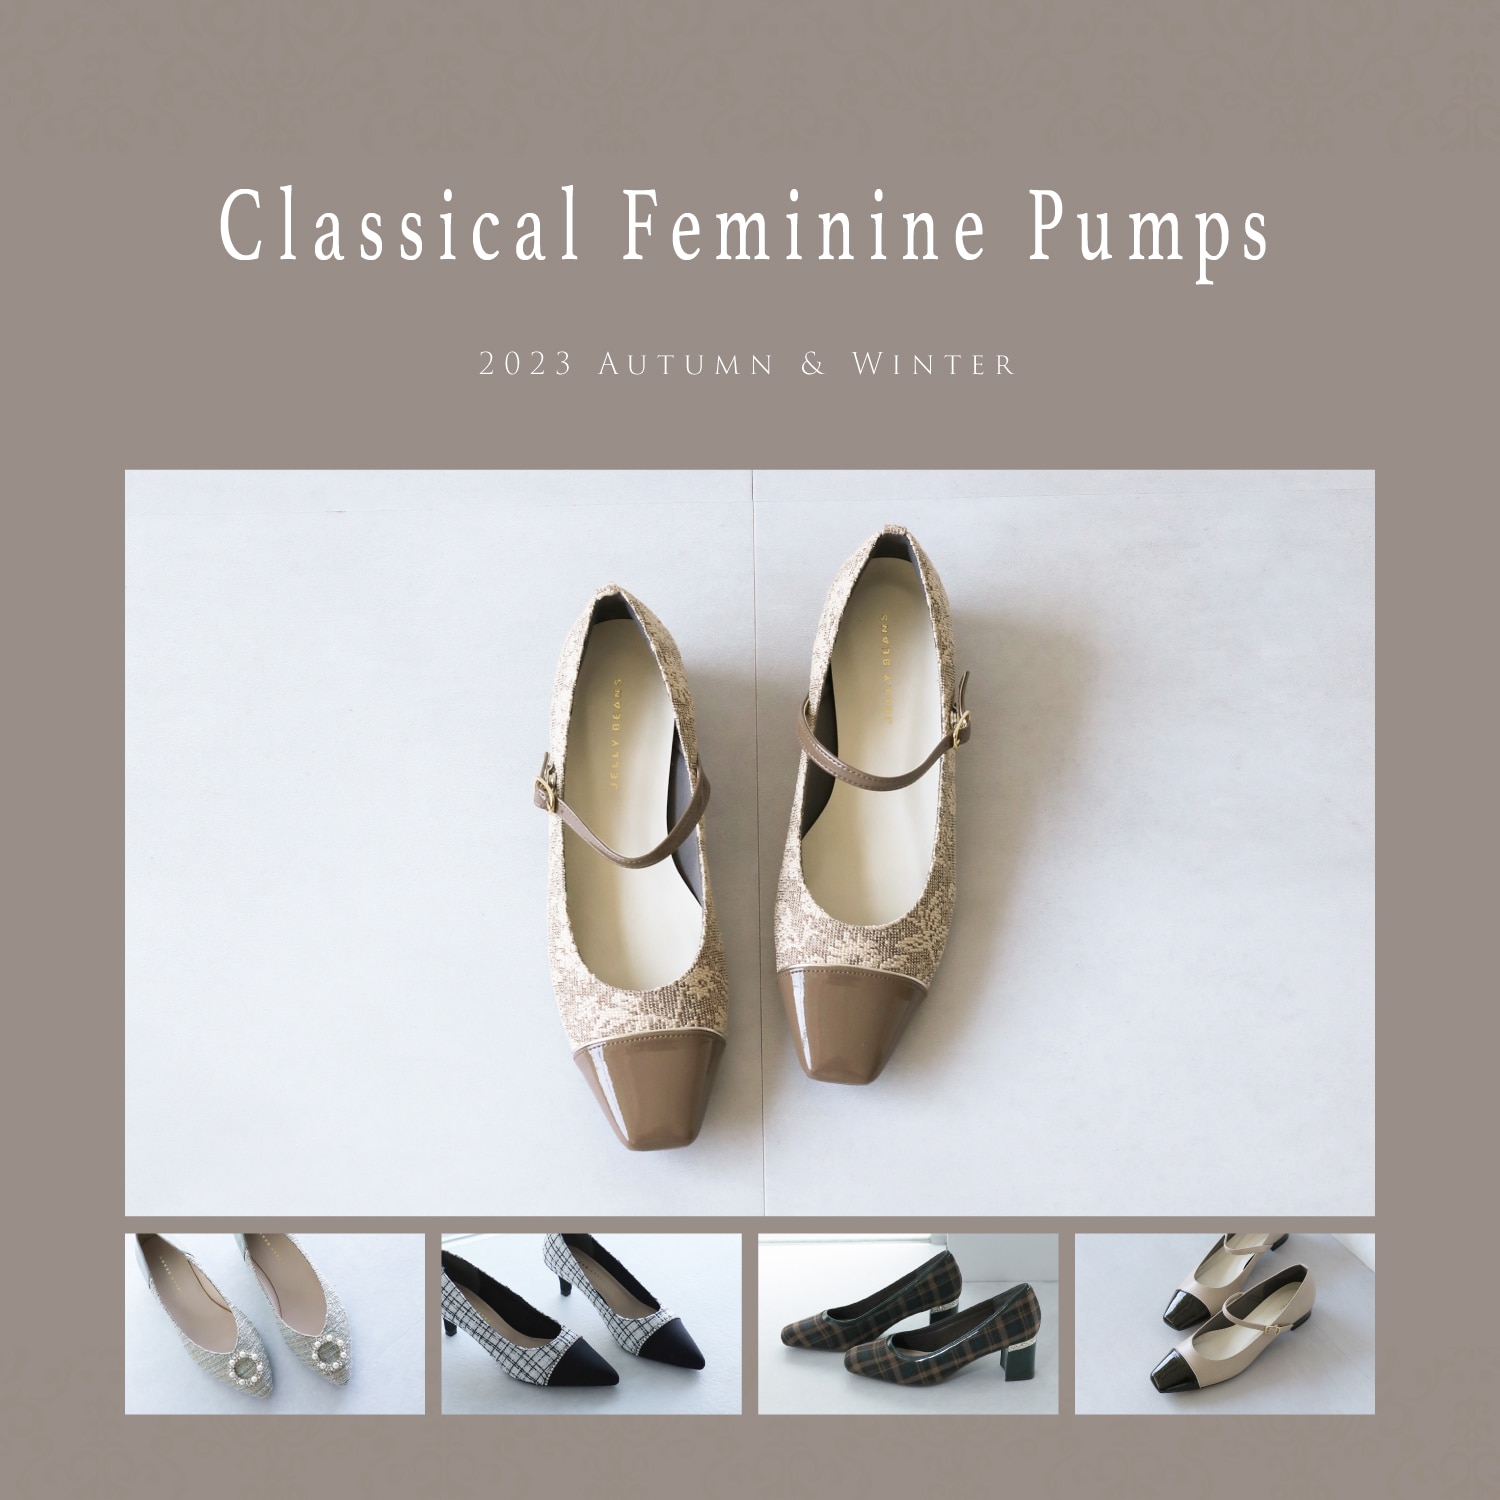 Classical Feminine Pumps Autumn & Winter